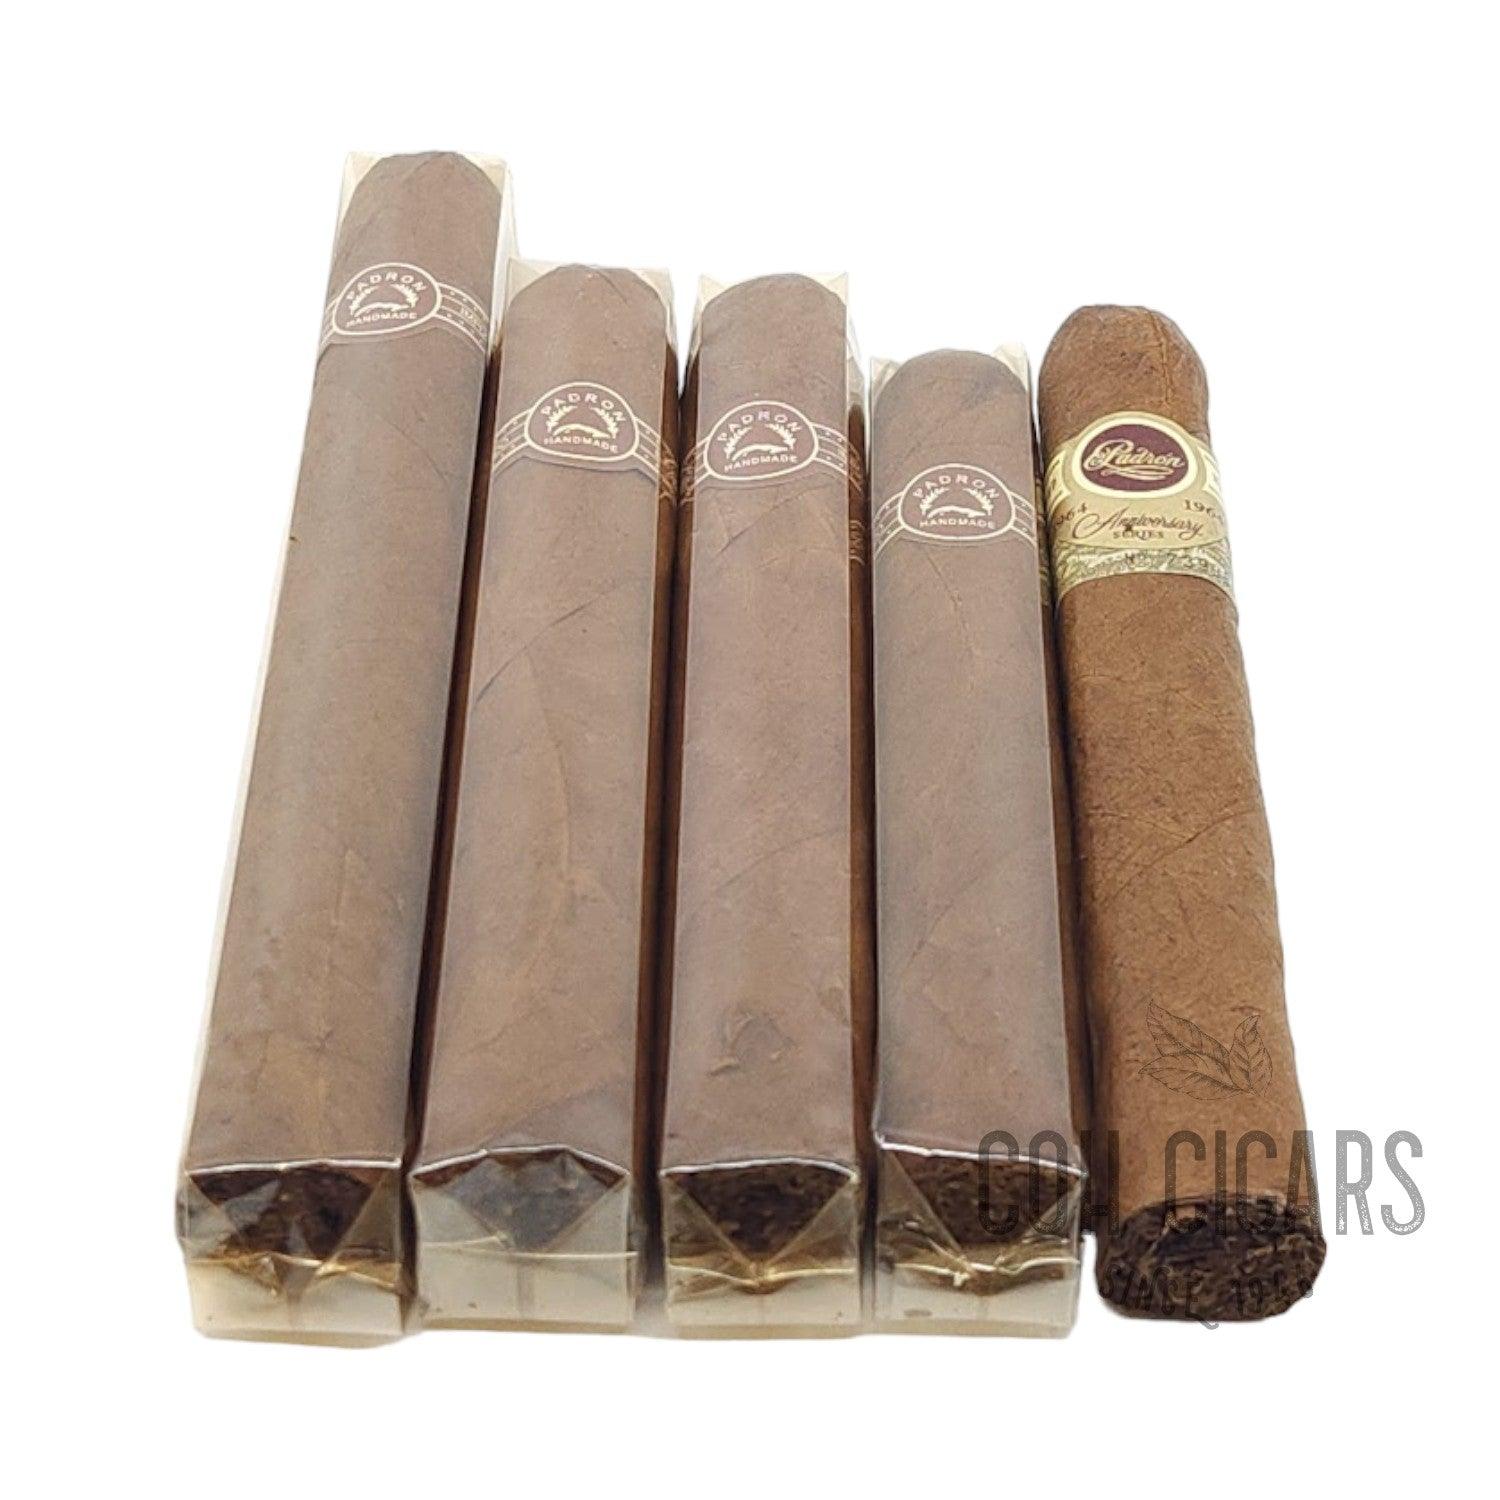 Padron Cigar | Gift Pack 88 Natural | Box 5 - hk.cohcigars